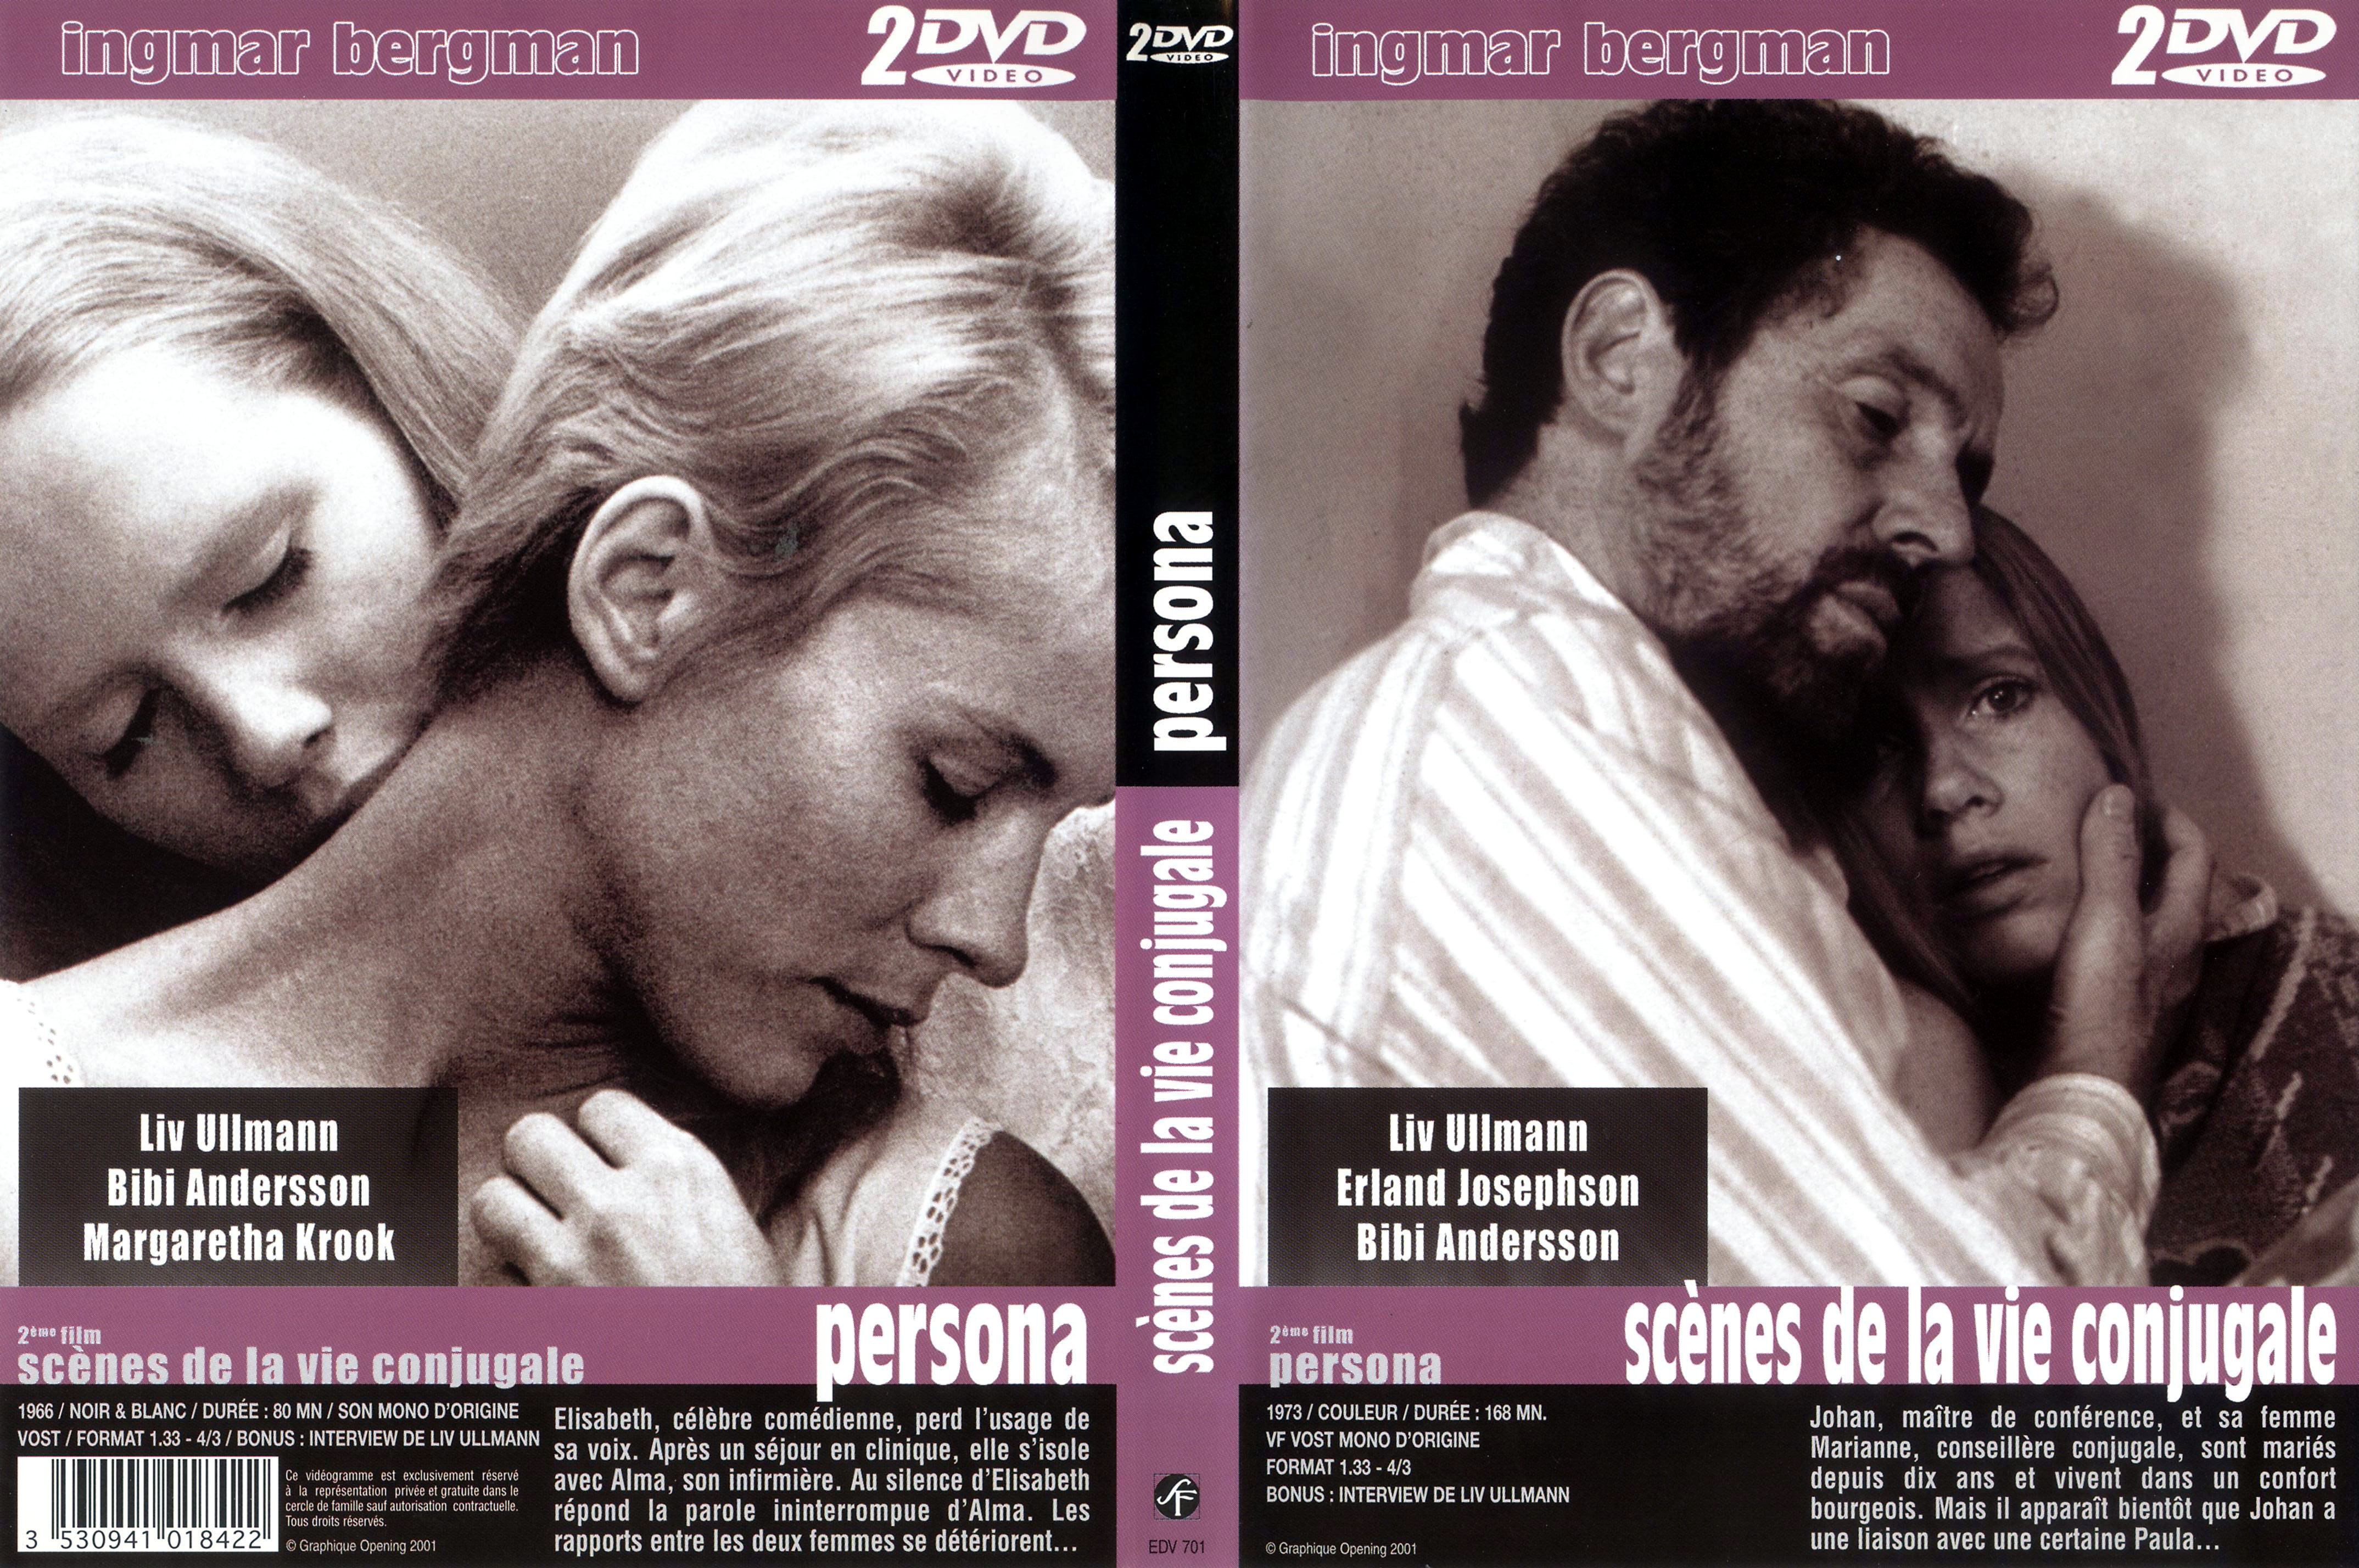 Jaquette DVD Scnes de la vie conjugale + Persona